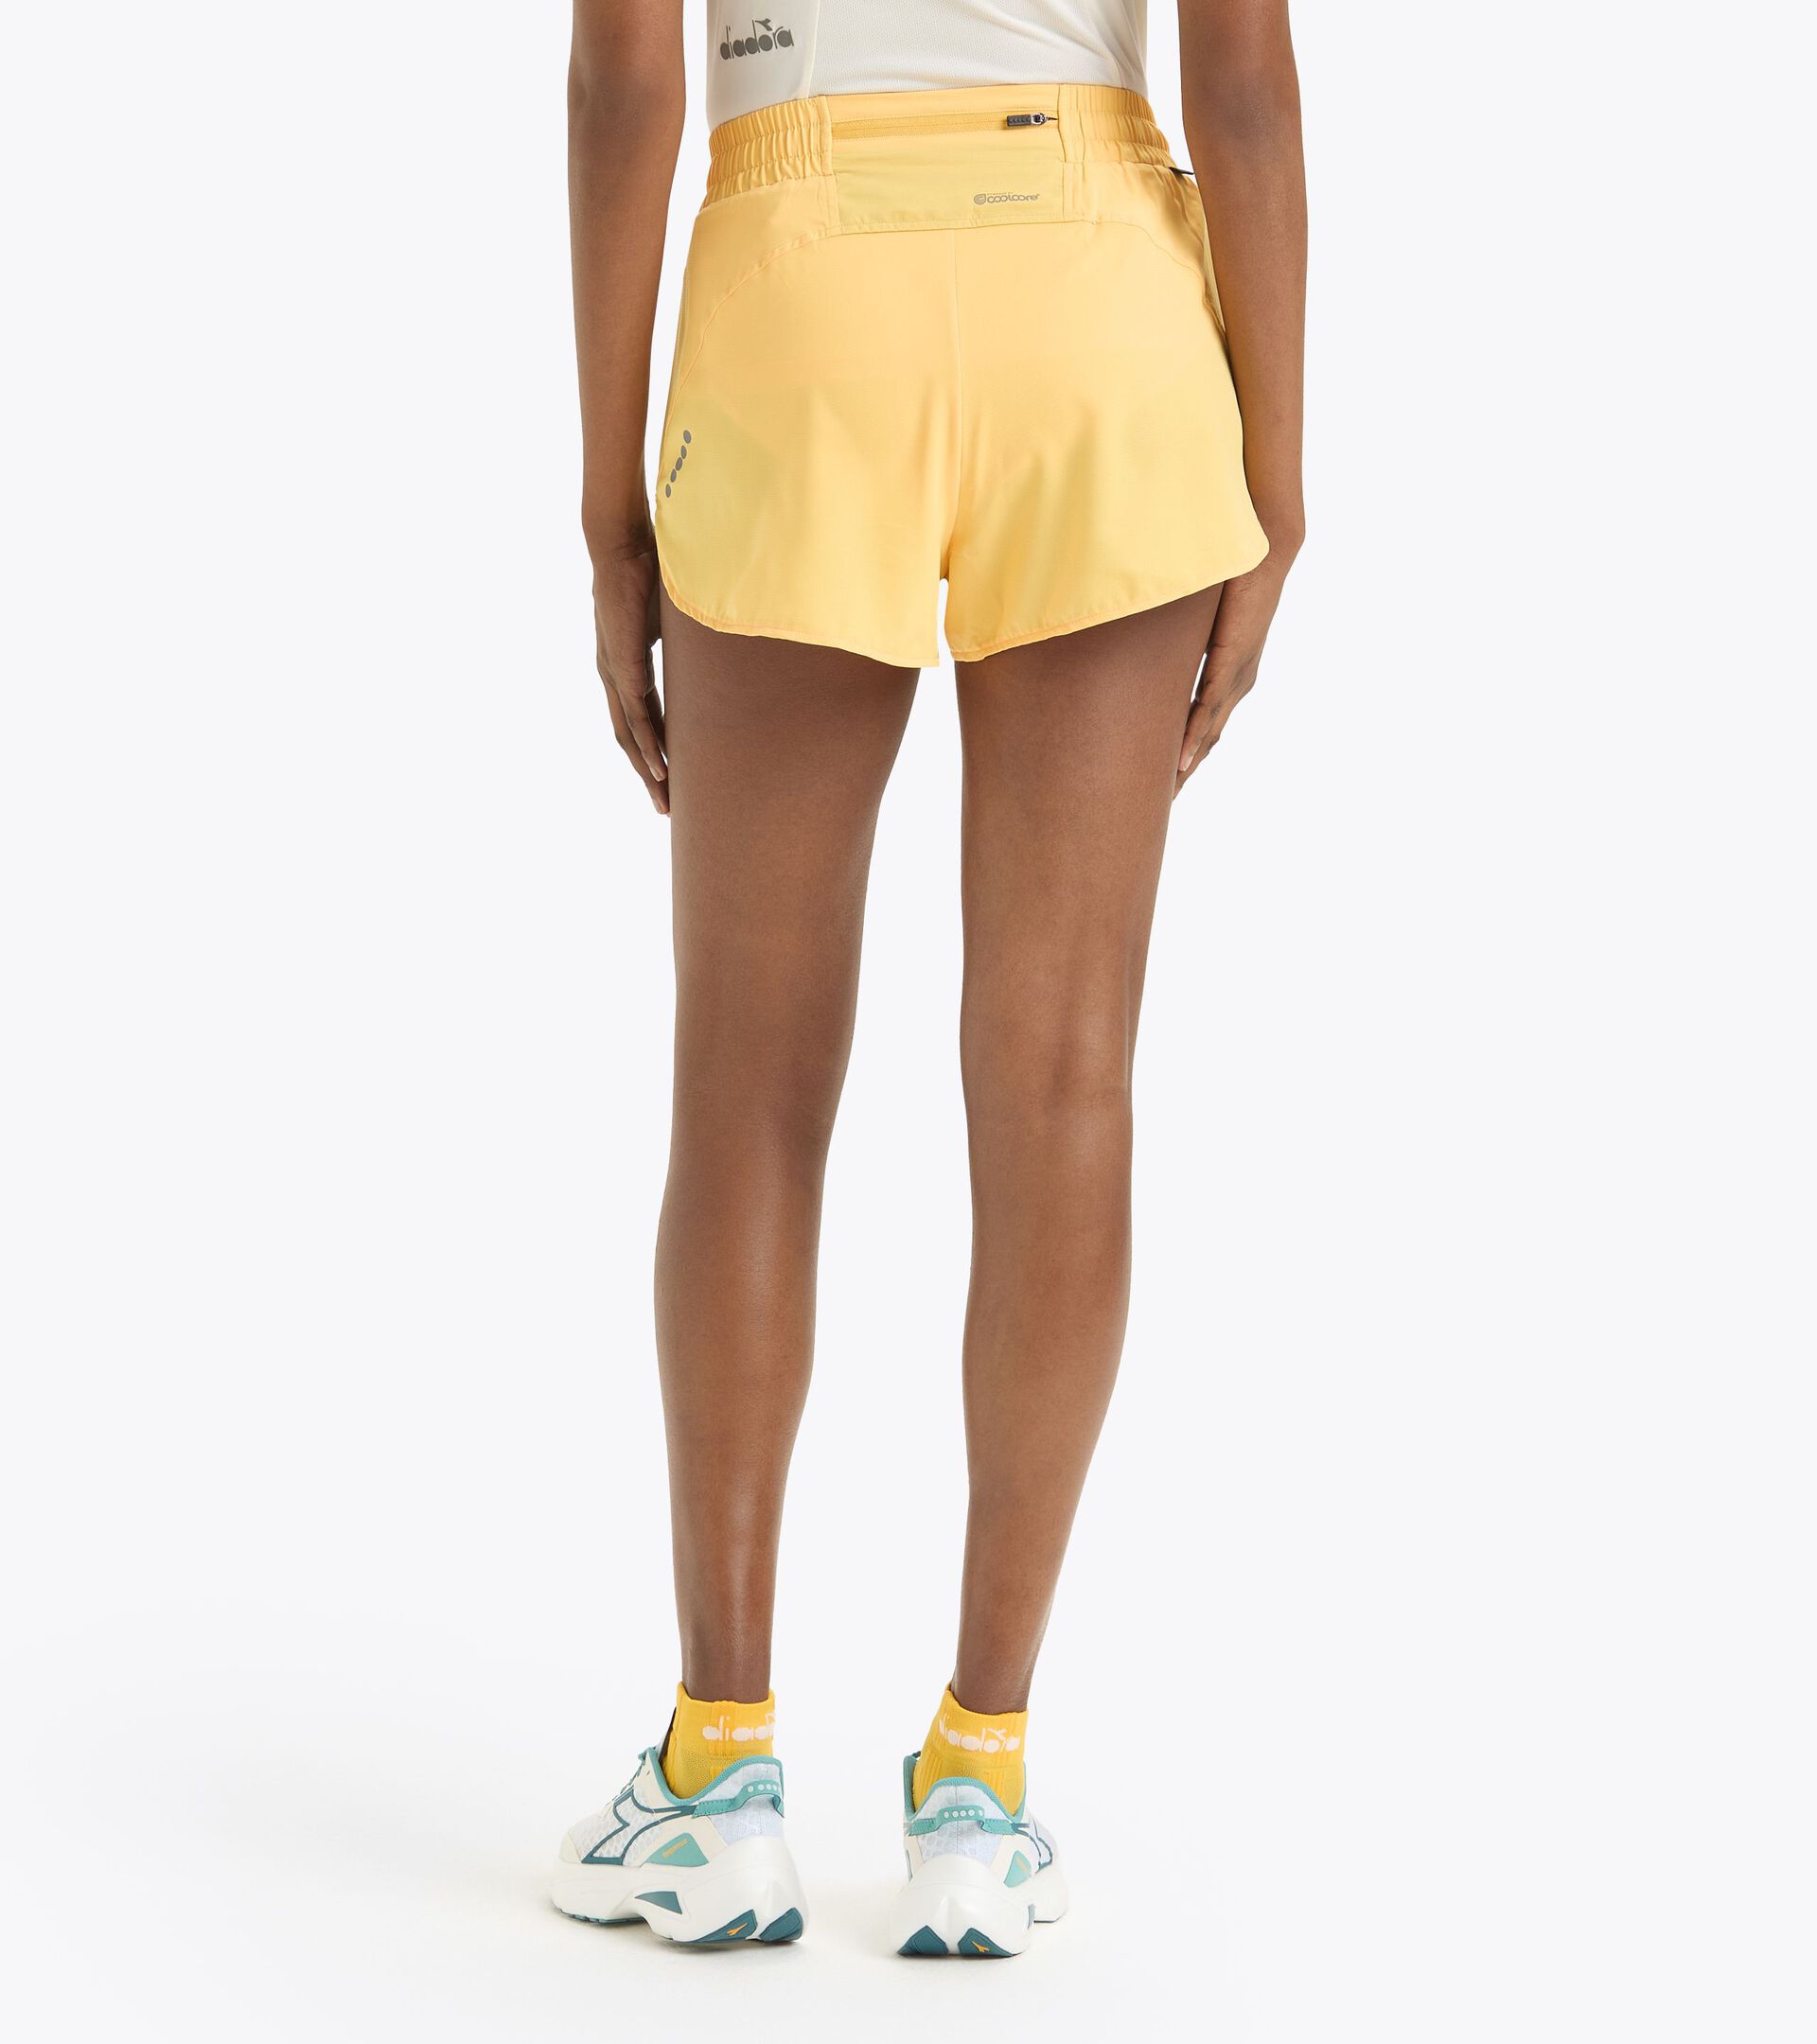 2,5’’ running shorts - Light fabric - Women’s L. SUPER LIGHT SHORTS 2.5" PALE MARIGOLD - Diadora